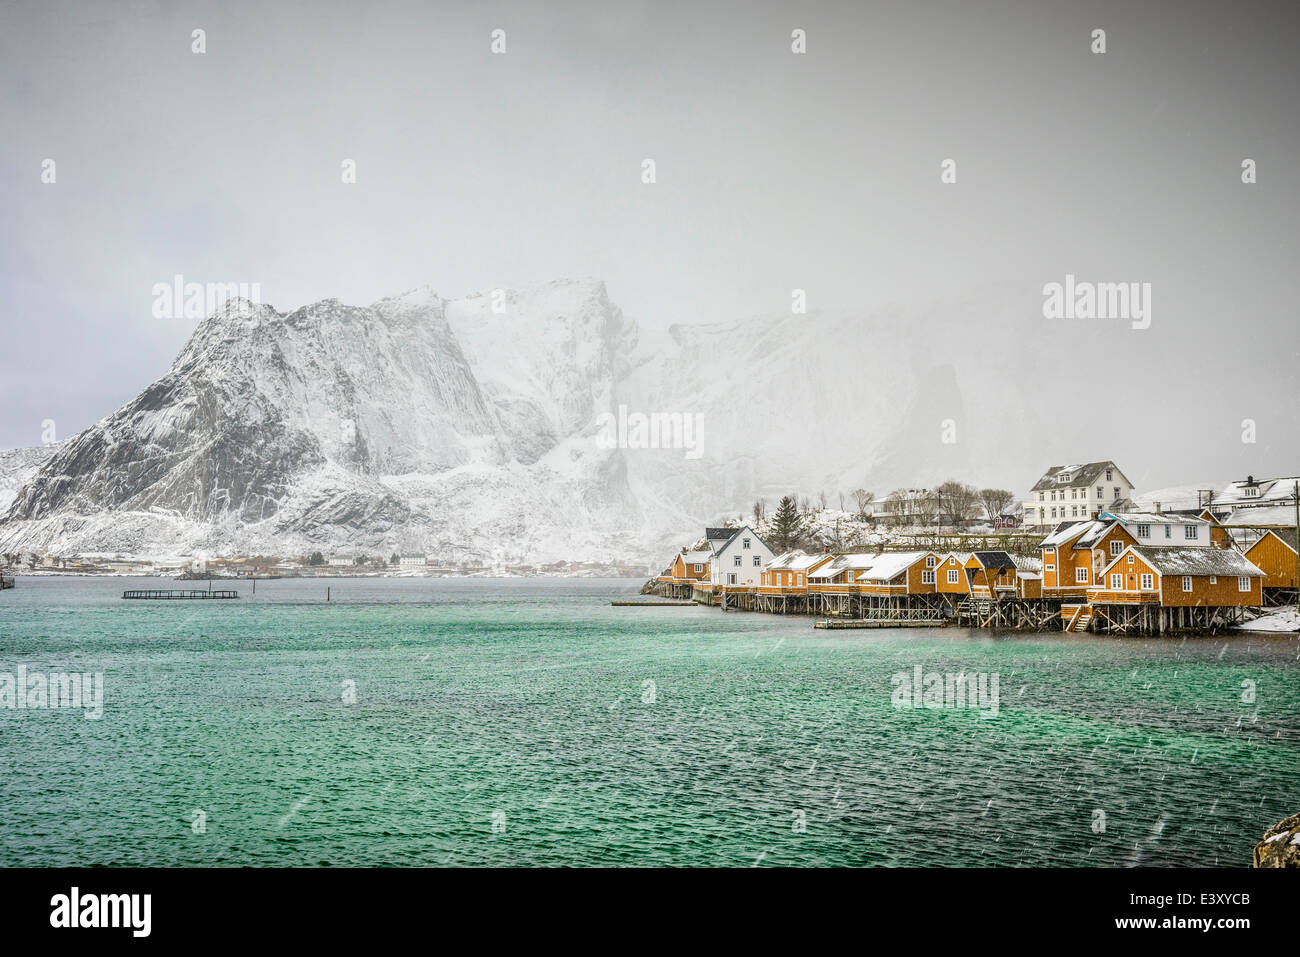 Montagnes enneigées surplombant la côte rocheuse, Reine, îles Lofoten, Norvège Banque D'Images